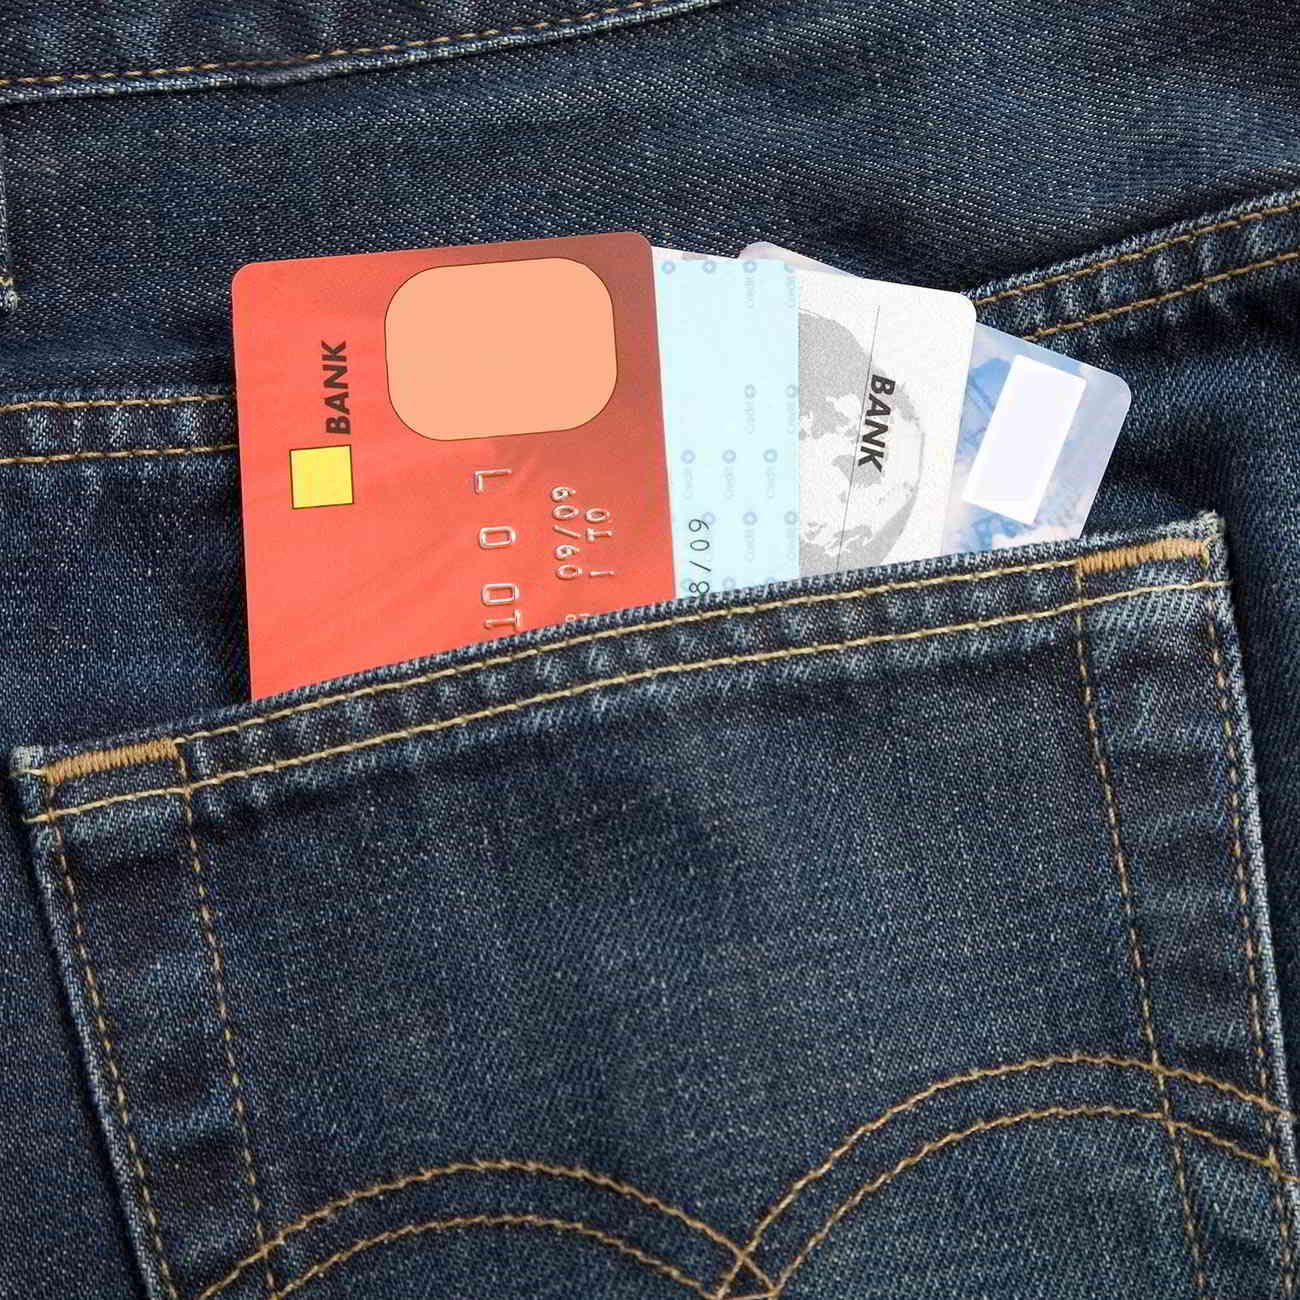 several credit cards in pocket